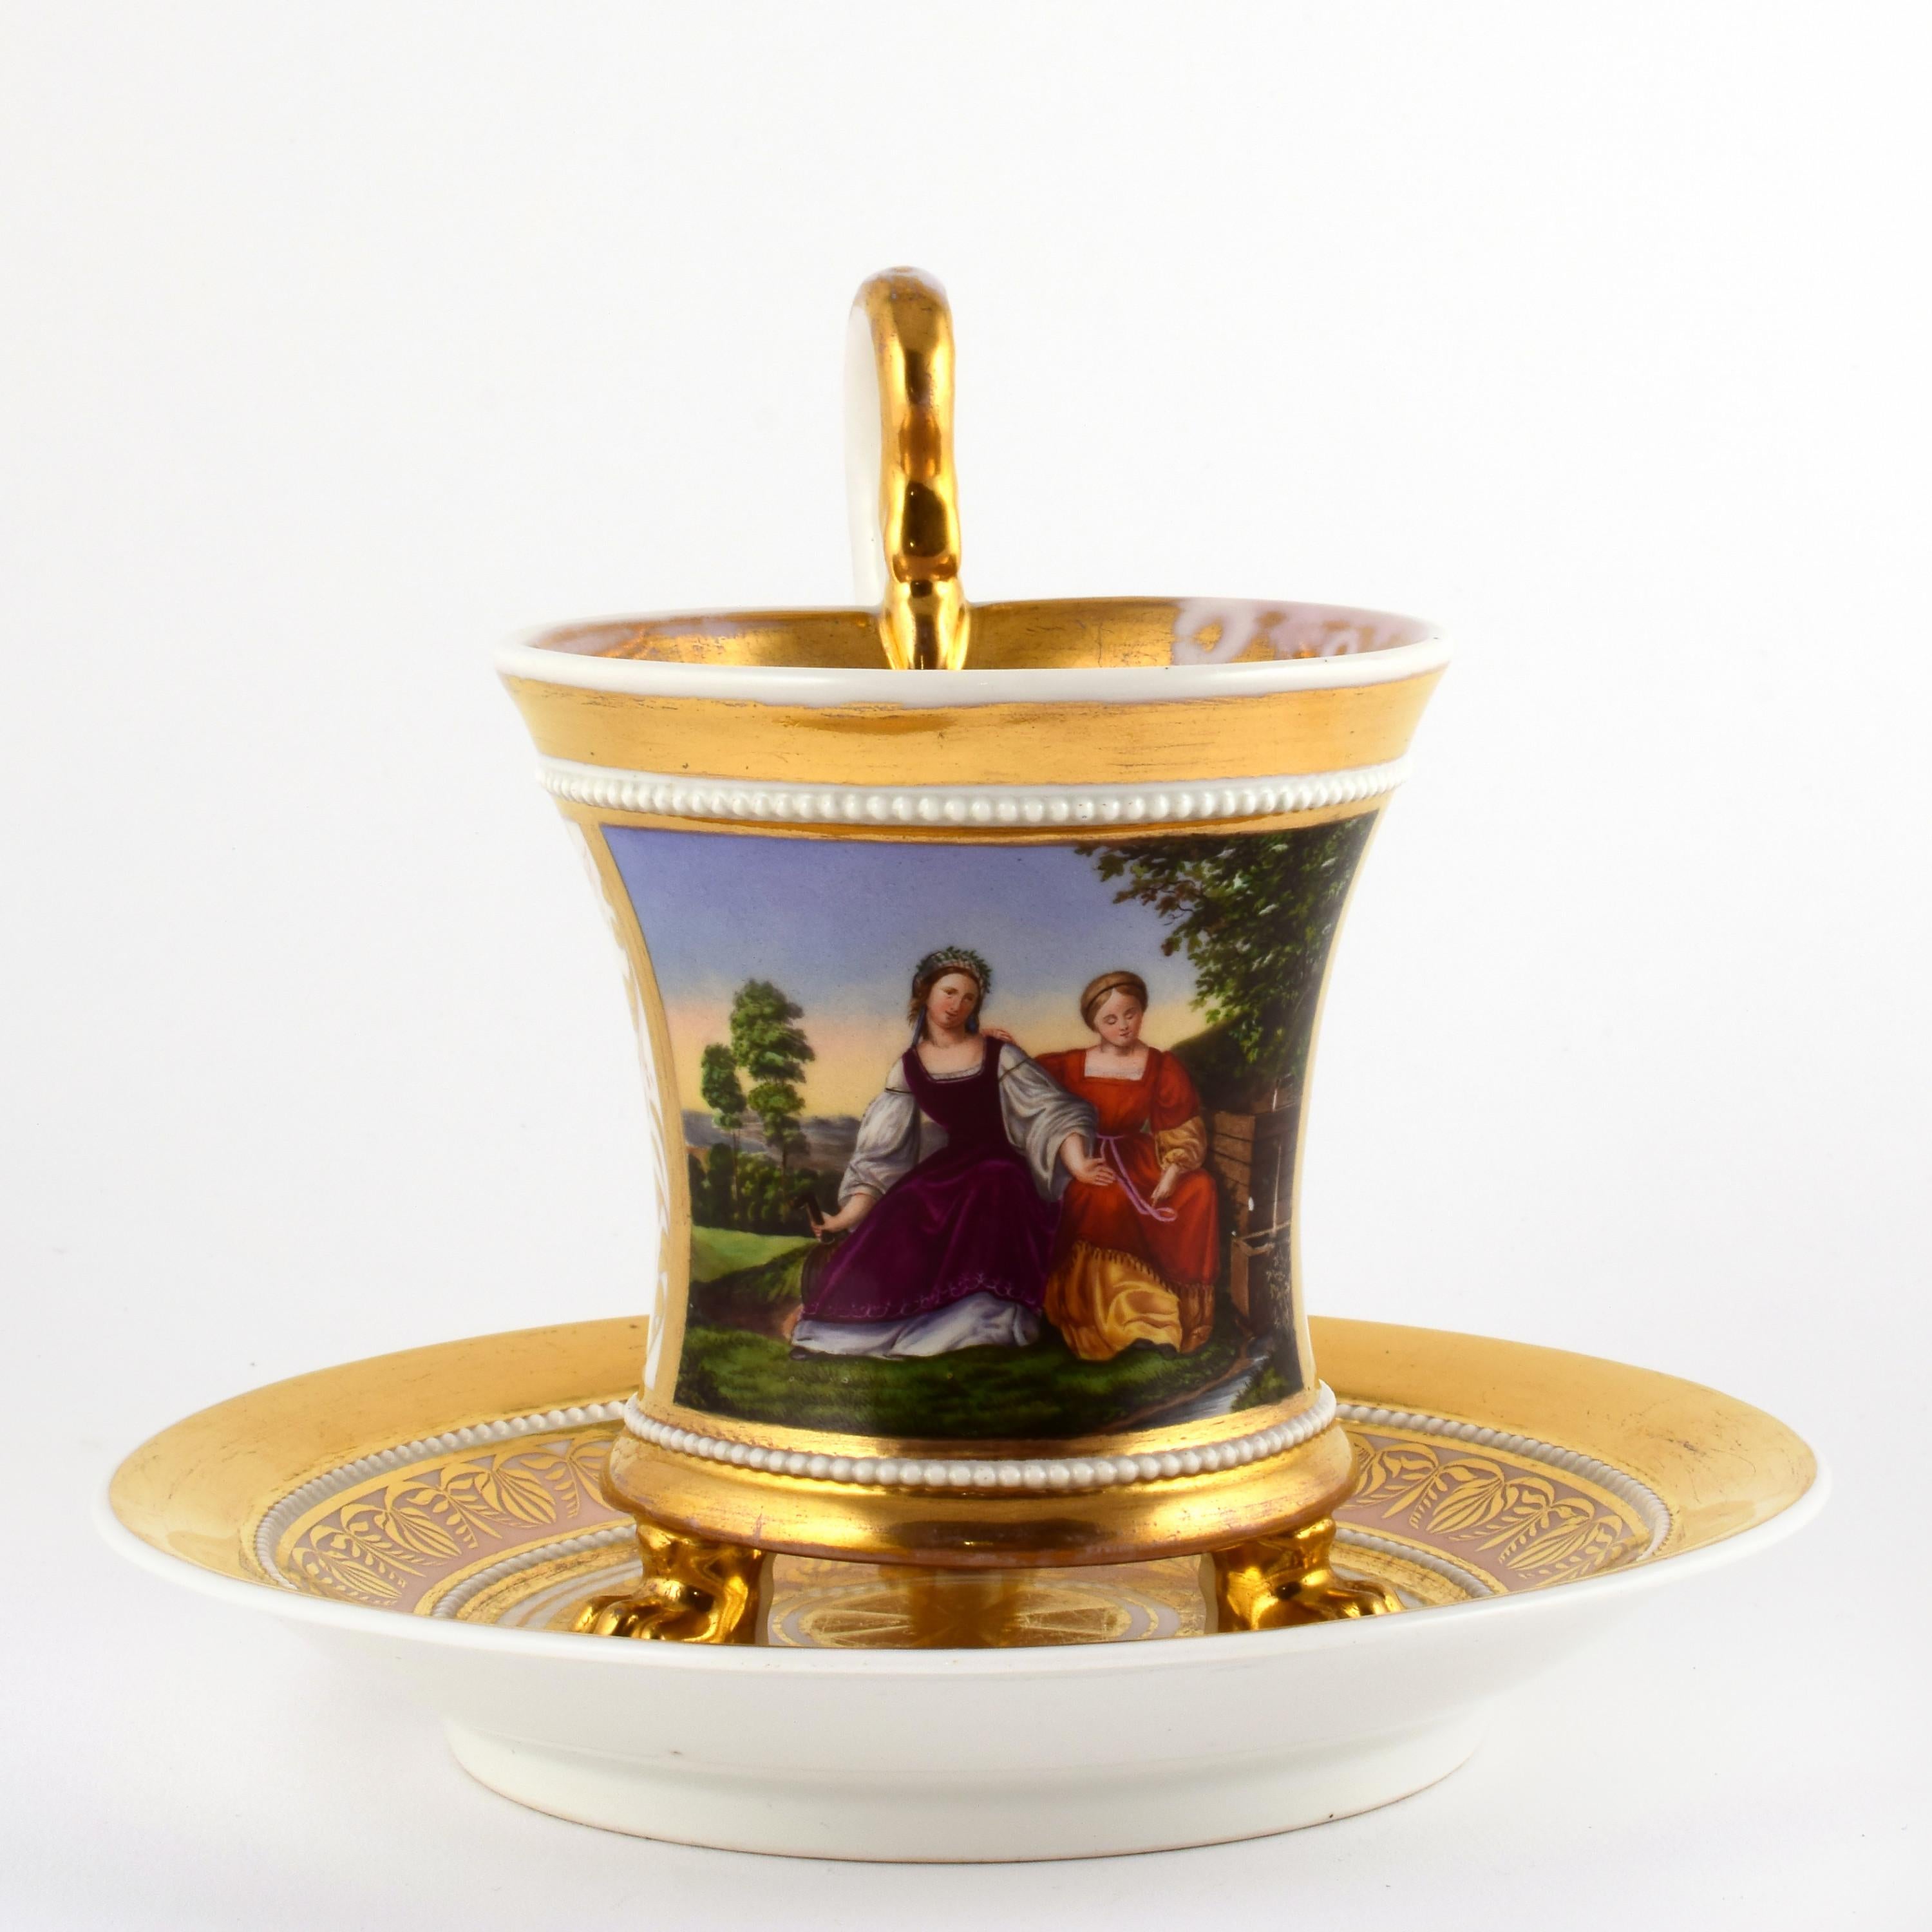 Tasse aus KPM-Porzellan mit feiner Handmalerei, die zwei Frauen in der Natur zeigt. Innen mit Vergoldung (leichte Gebrauchsspuren an der Vergoldung).
Die KPM (Königliche Porzellan-Manufaktur Berlin) wurde 1751 in Berlin gegründet.